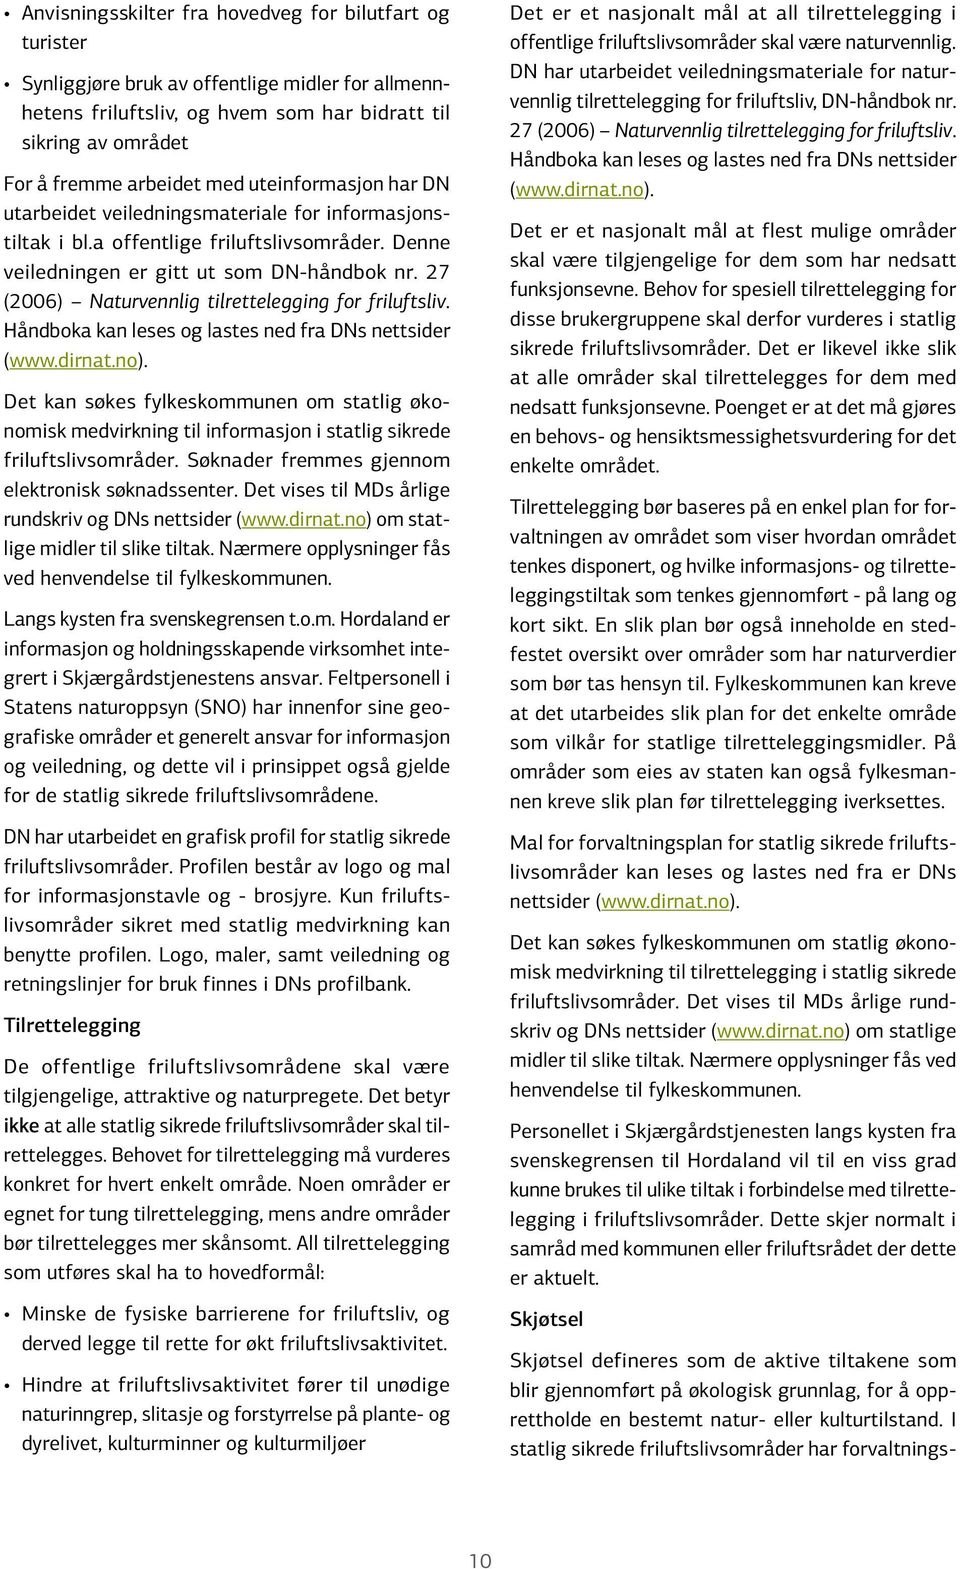 27 (2006) Naturvennlig tilrettelegging for friluftsliv. Håndboka kan leses og lastes ned fra DNs nettsider (www.dirnat.no).